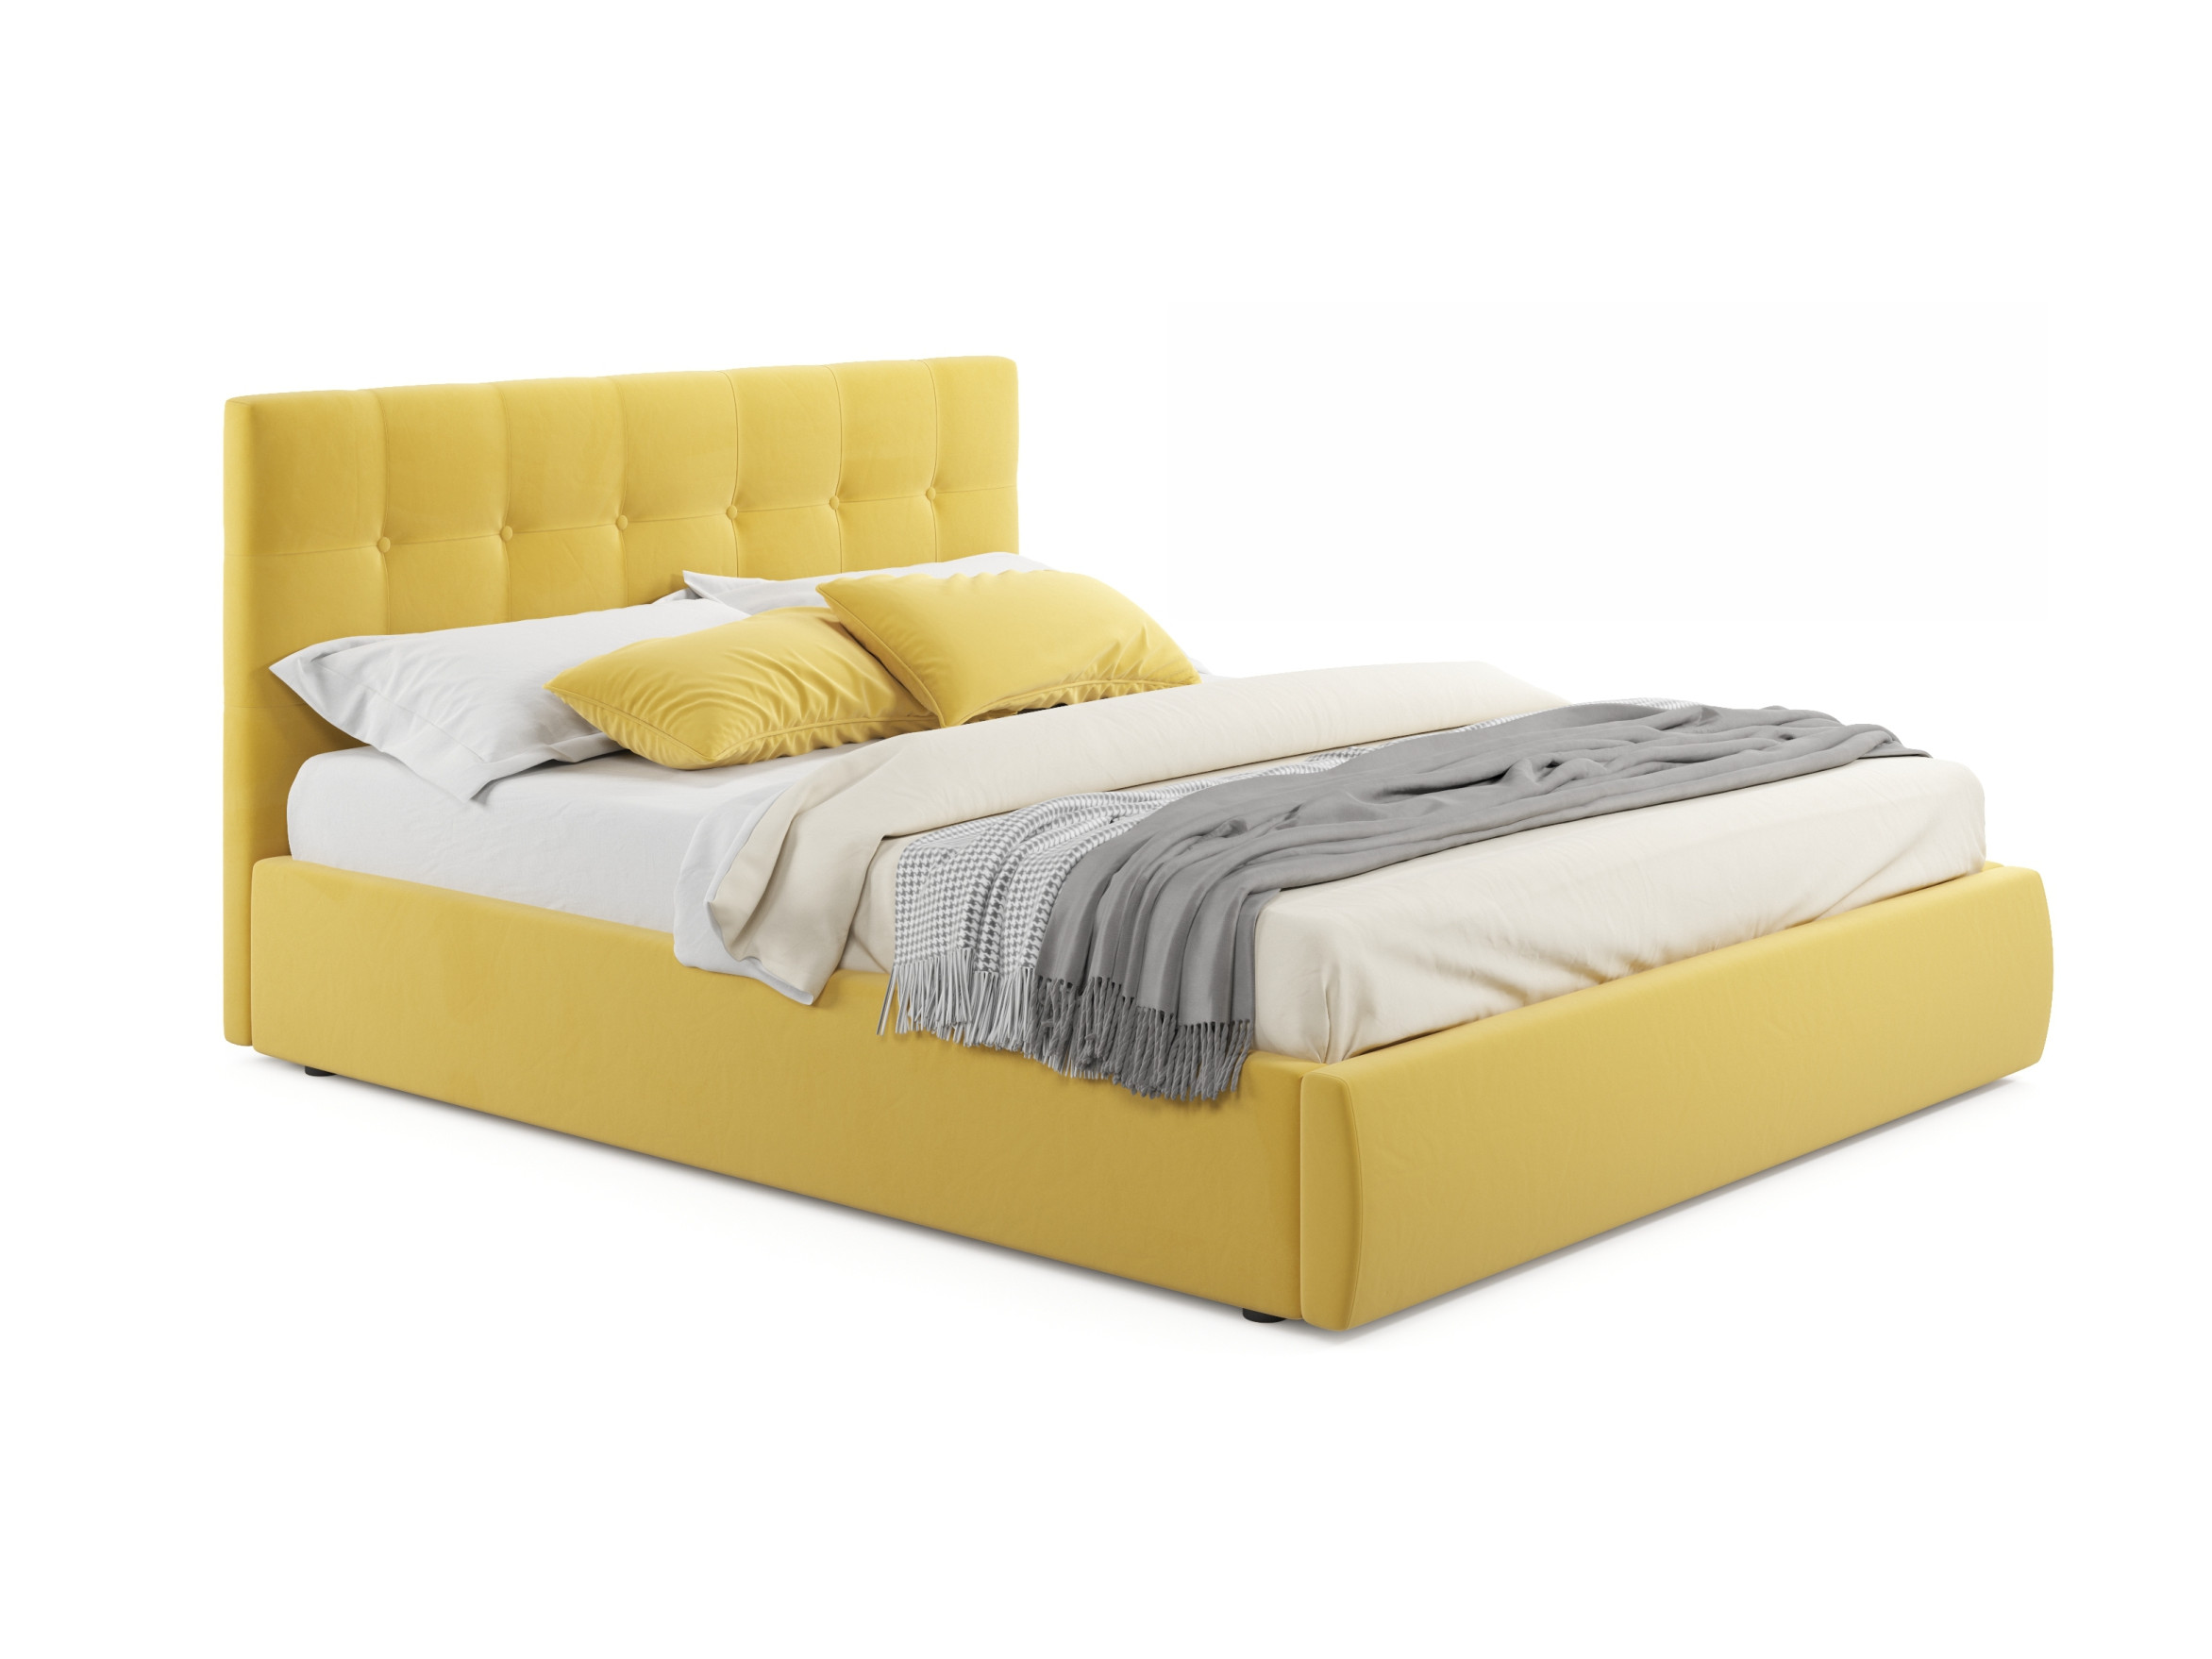 Мягкая кровать Selesta 1800 желтая с подъемным механизмом желтый, Желтый, Велюр, ДСП мягкая кровать selesta 1800 желтая с матрасом гост с подъемным механизмом желтый желтый велюр дсп